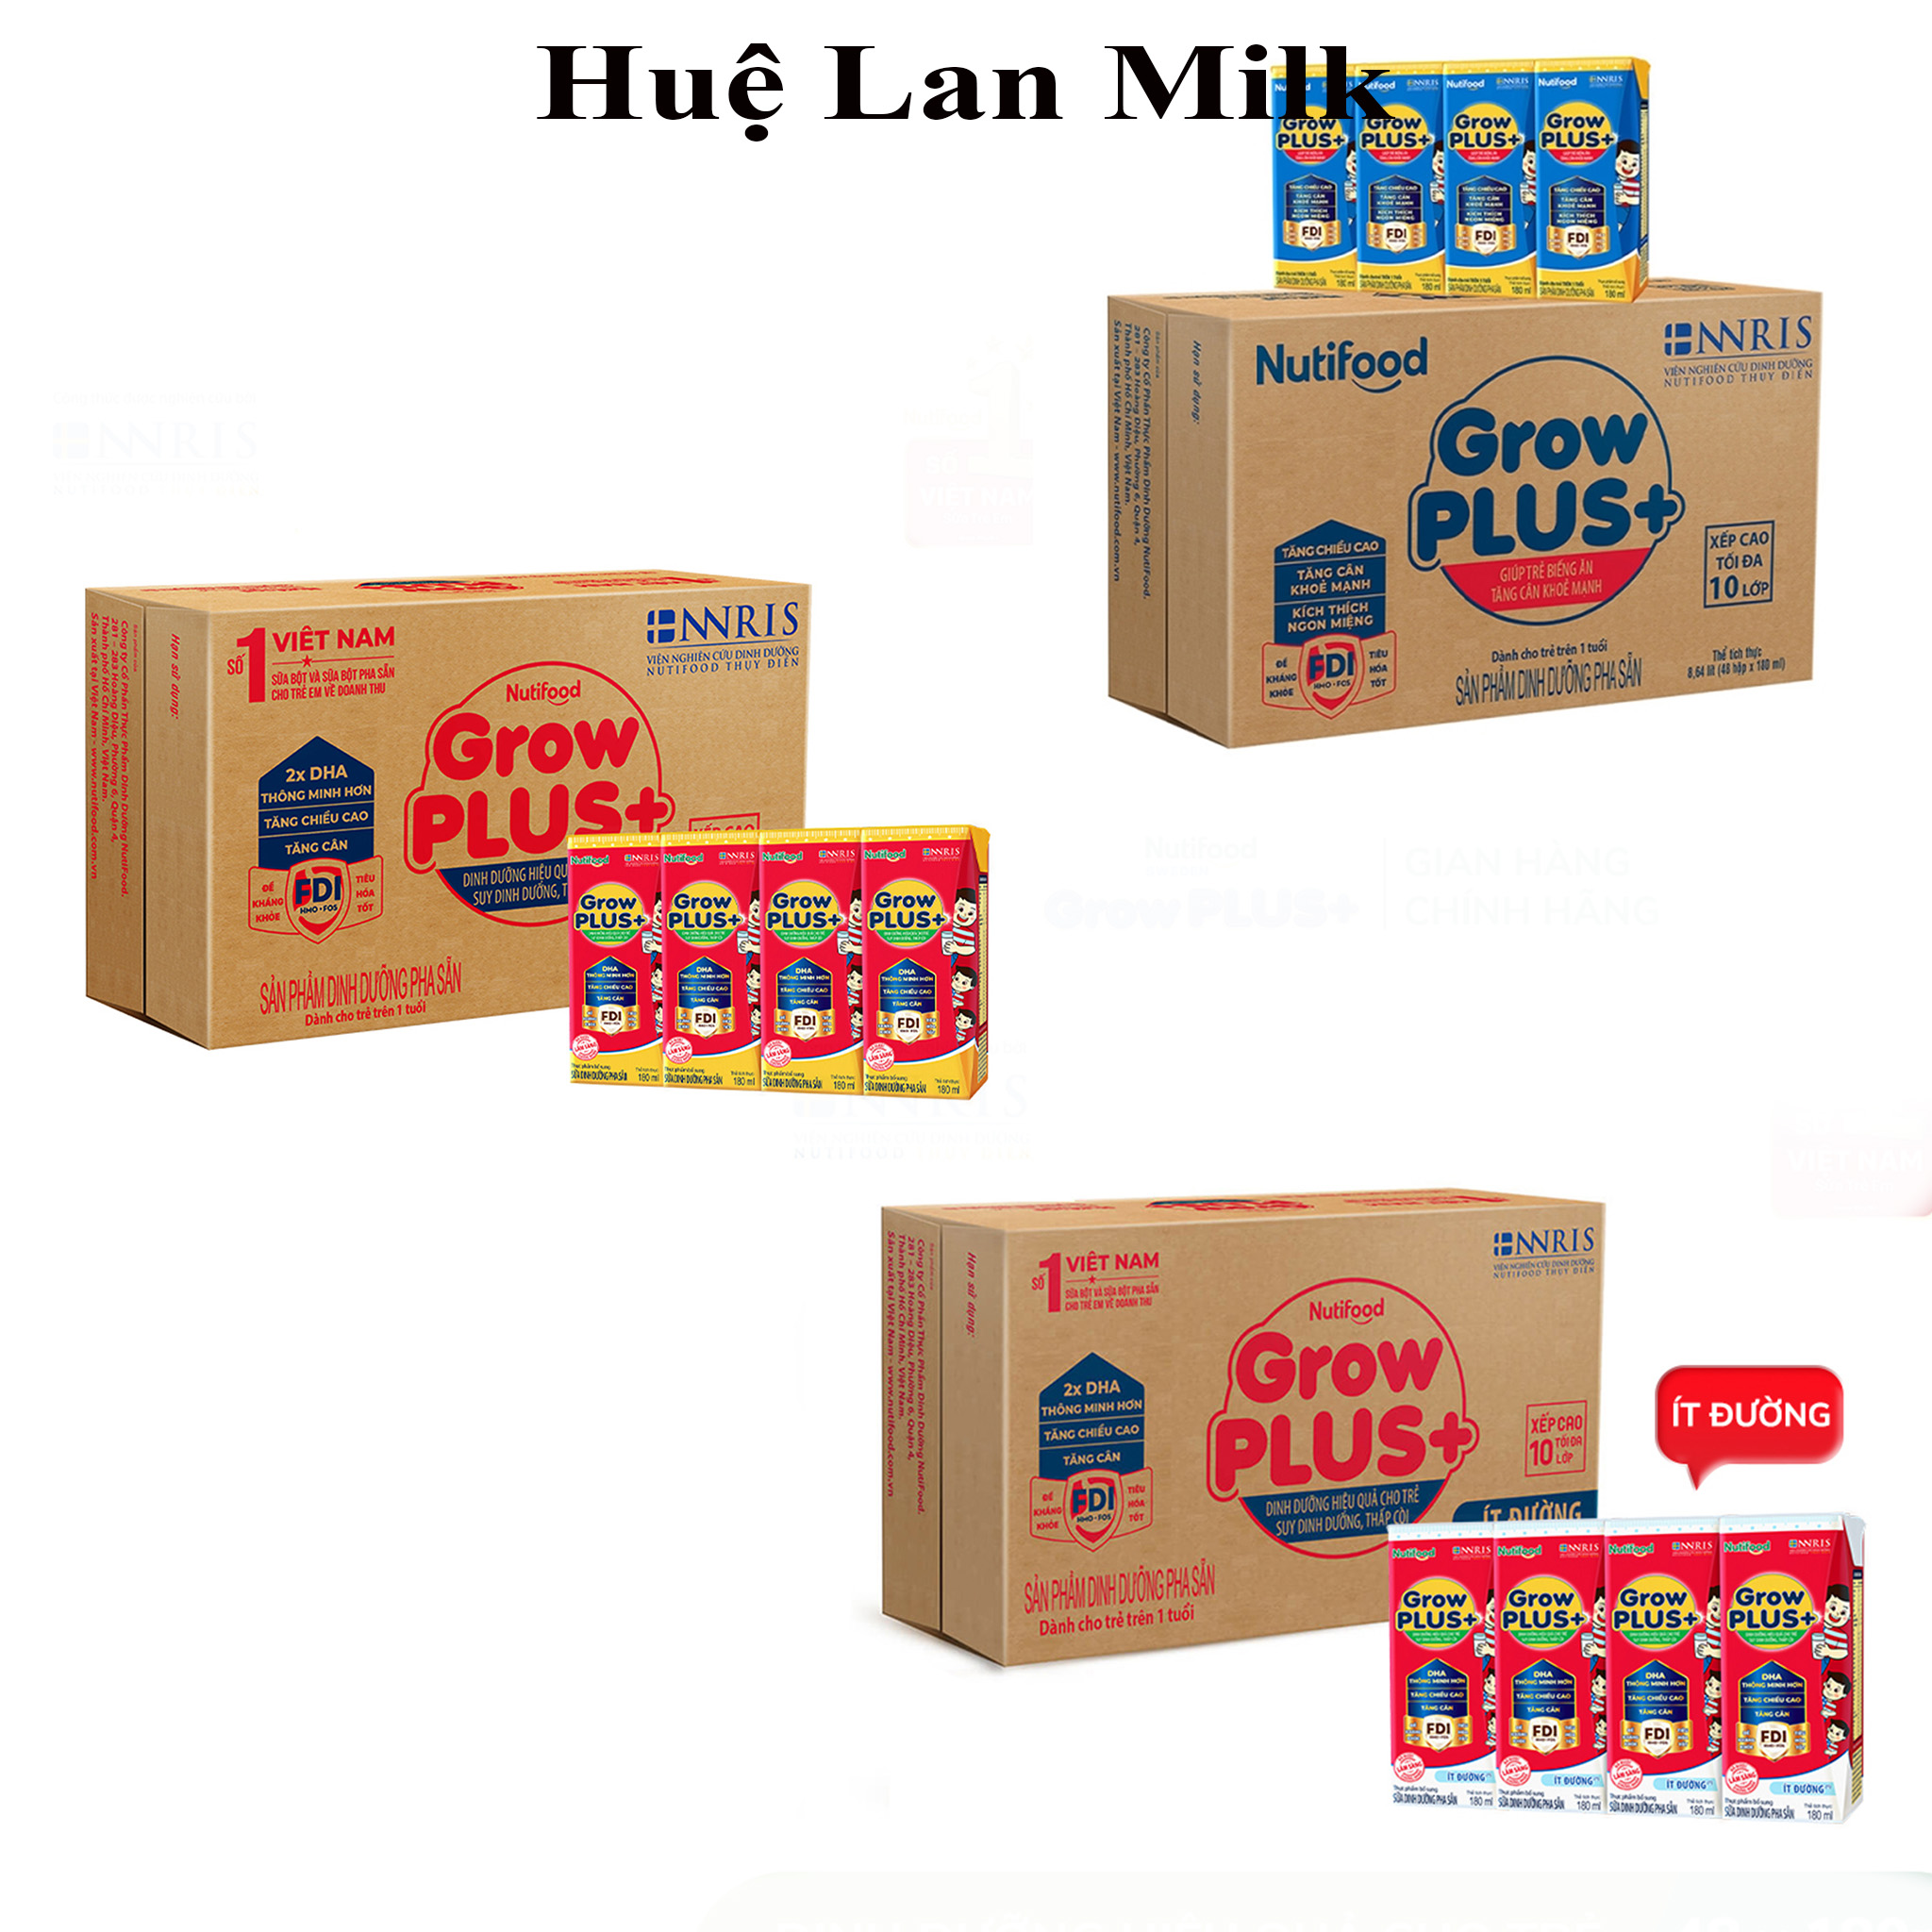 Sữa Bột Pha Sẵn Nutifood Grow Plus+ Đỏ/Xanh  Thùng 48 Hộp x 180ml (Cho trẻ suy dinh dưỡng, thấp còi) - Huệ Lan Milk